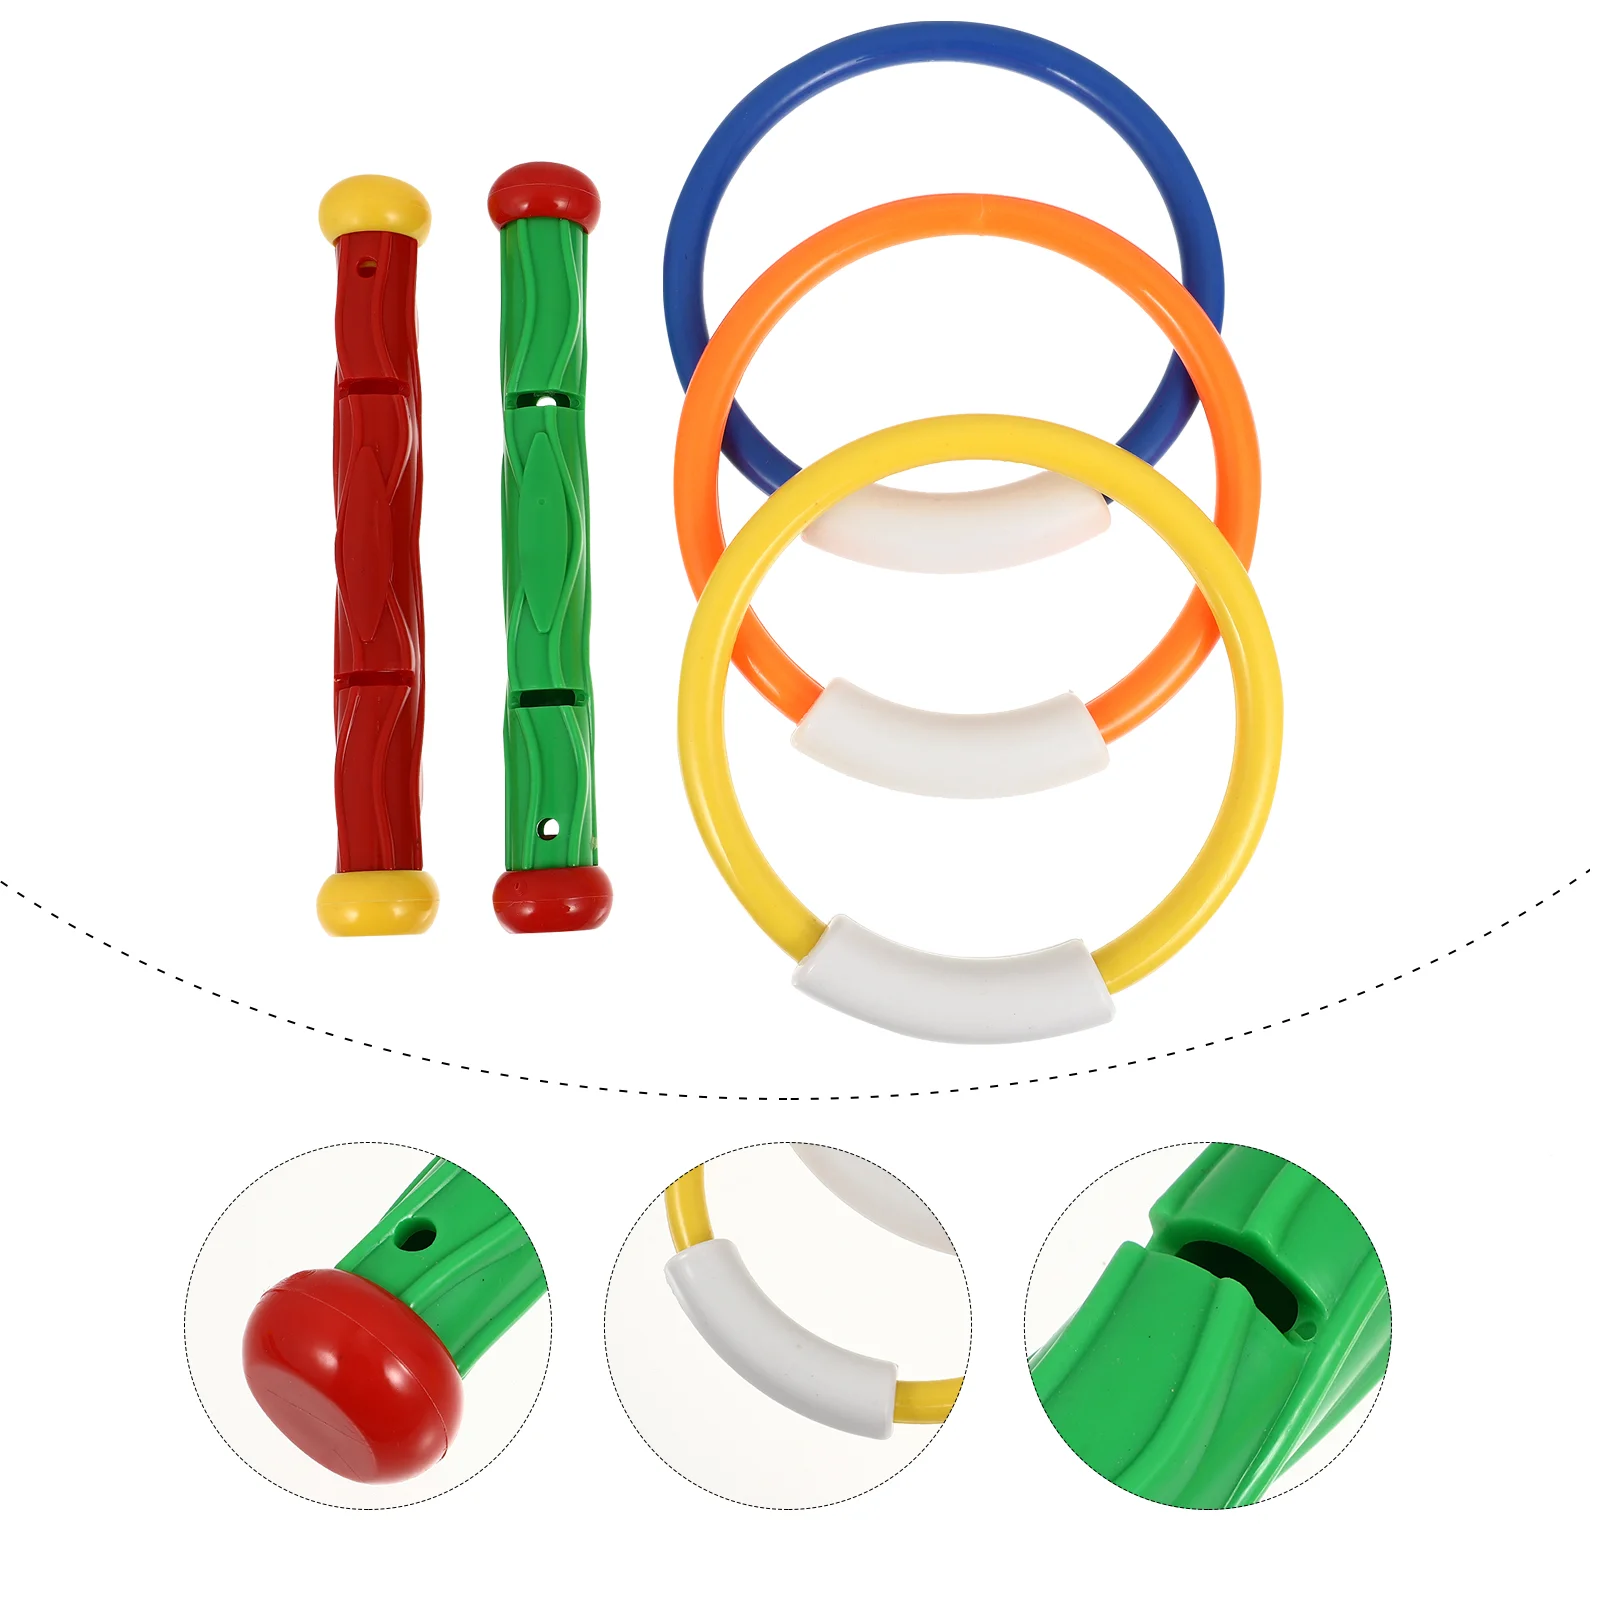 5 ШТ. разноцветных палочек для дайвинга, игрушки для бассейна, кольцо для дайвинга, игрушки для бассейна, детские игрушки для дайвинга (случайное количество и цвет)